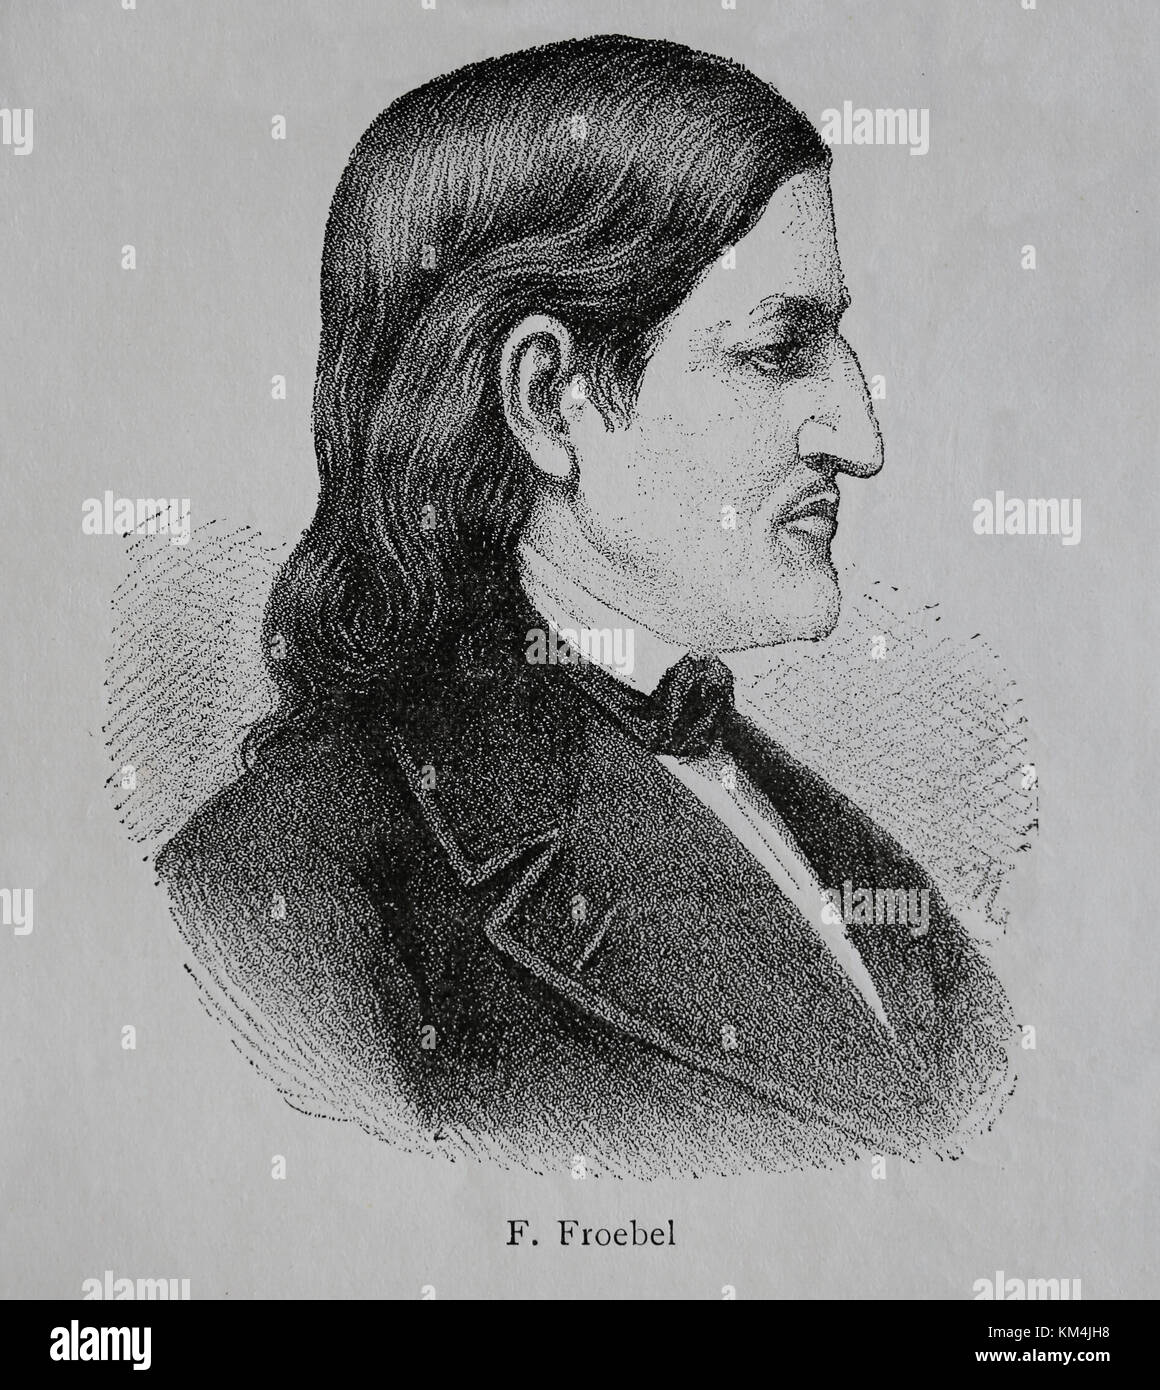 Fiedrich Froebel or Frobel (1782-1852). German pedagogue. Created the Kindergarten. Portrait. Engraving, 1883. Stock Photo